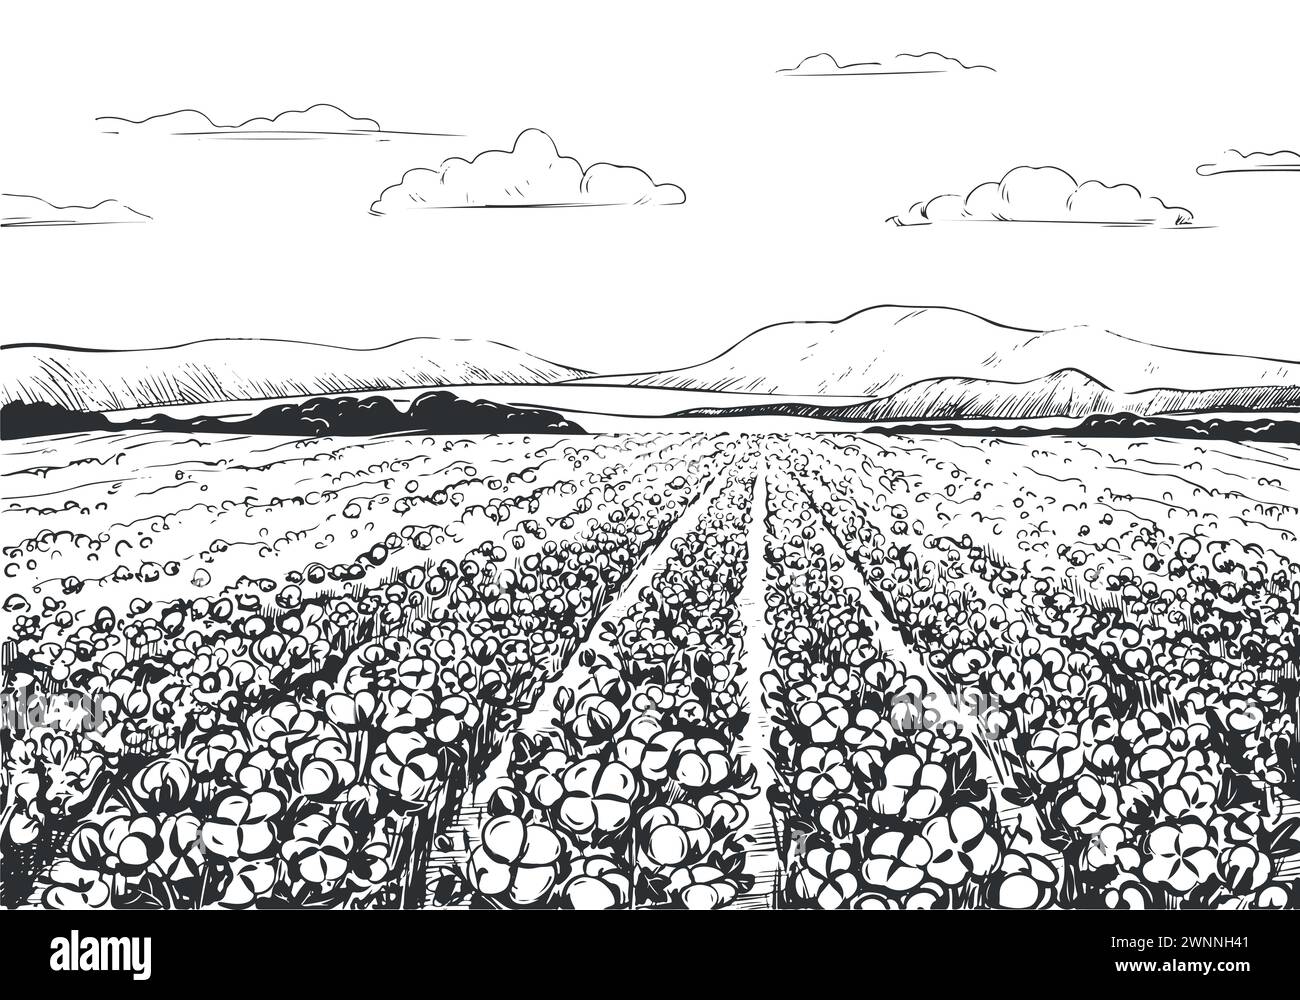 Esquisse vectorielle d'un champ de coton. Paysage rural avec des montagnes, temps de récolte. Feuilles et fleurs de coton, illustration détaillée d'une ferme en gravure Illustration de Vecteur